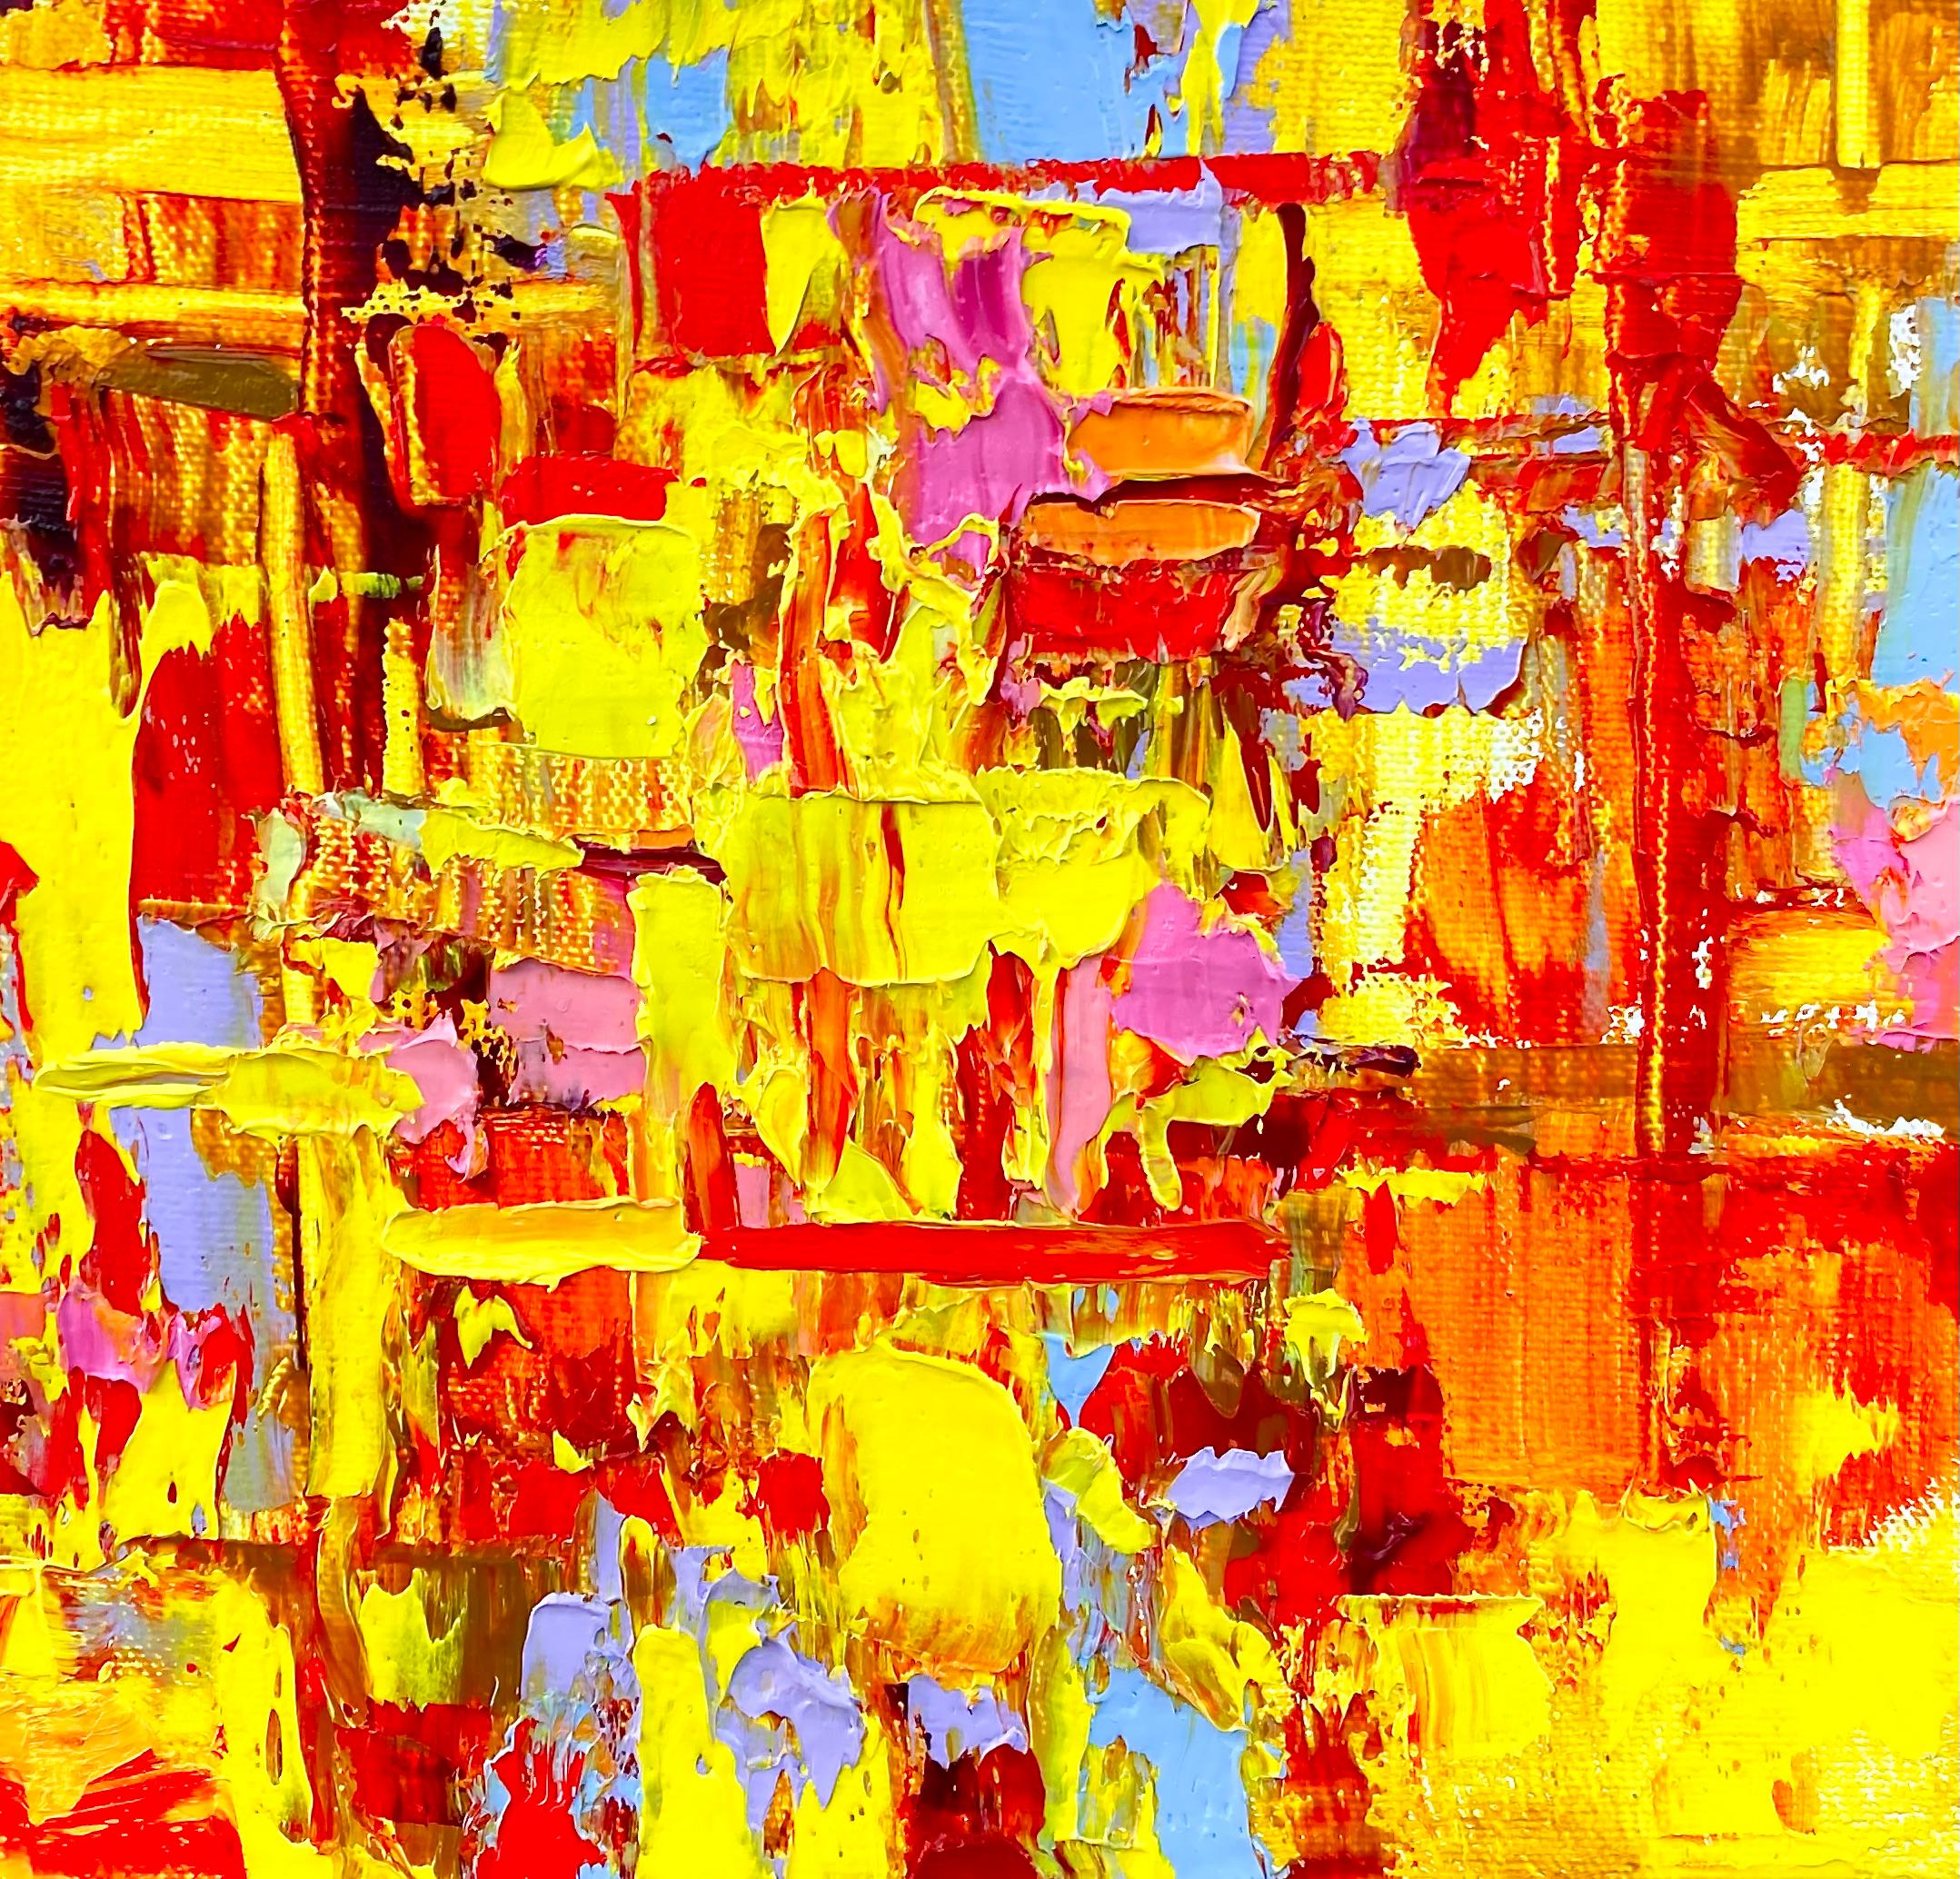 L'une d'une grande série de petites peintures expressionnistes abstraites carrées brillamment colorées, mesurant 8